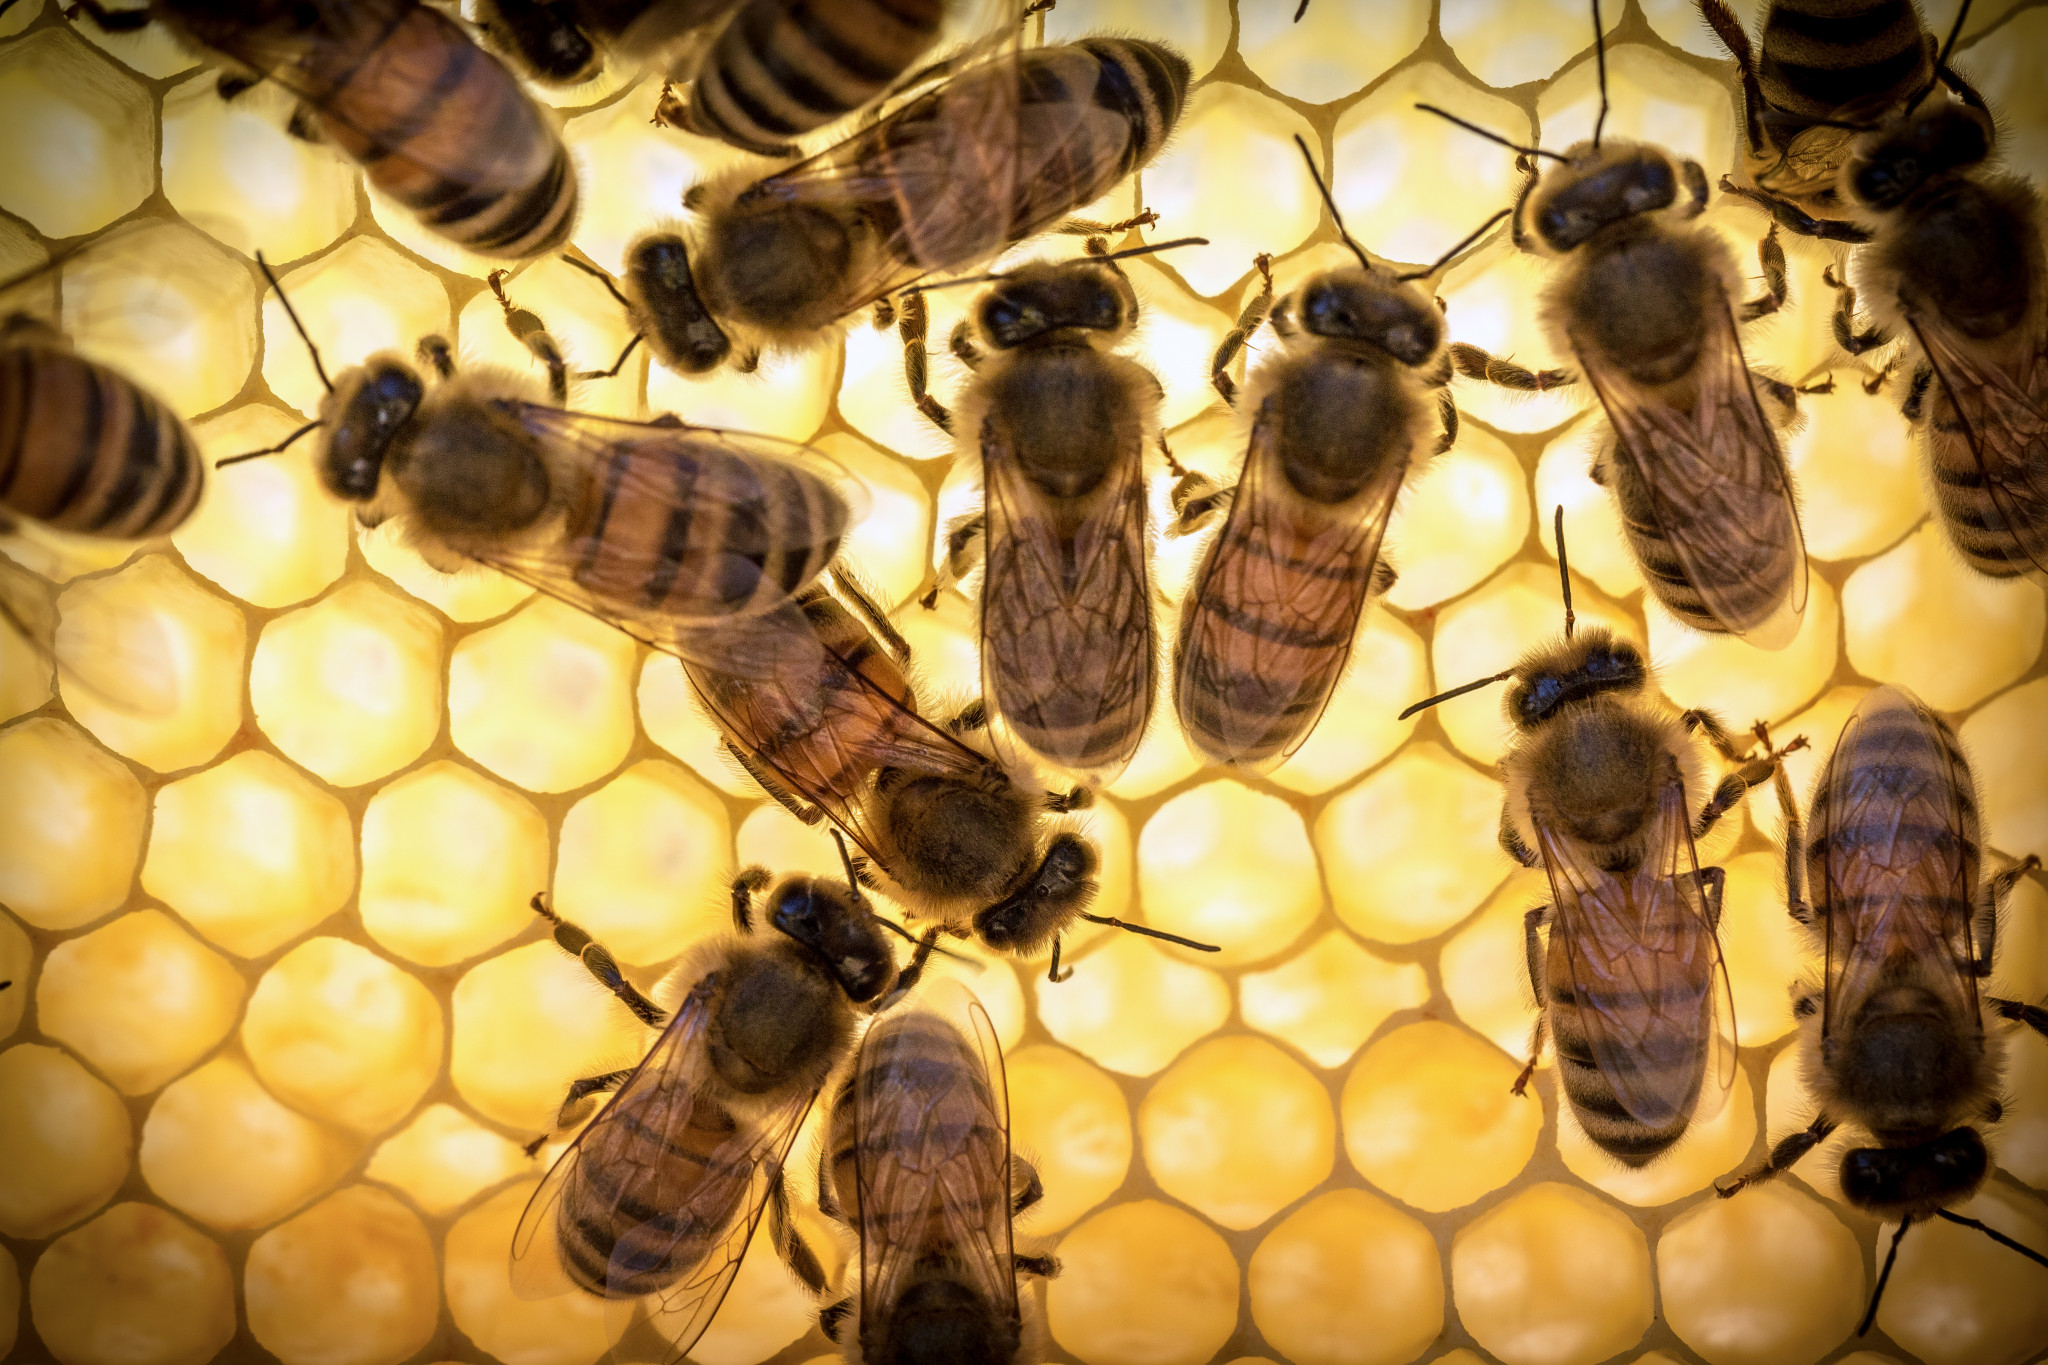 Včelí materská kašička sa neodporúča používať v noci, pretože pod jej vplyvom zvyšuje nervovú aktivitu a možnú nespavosť